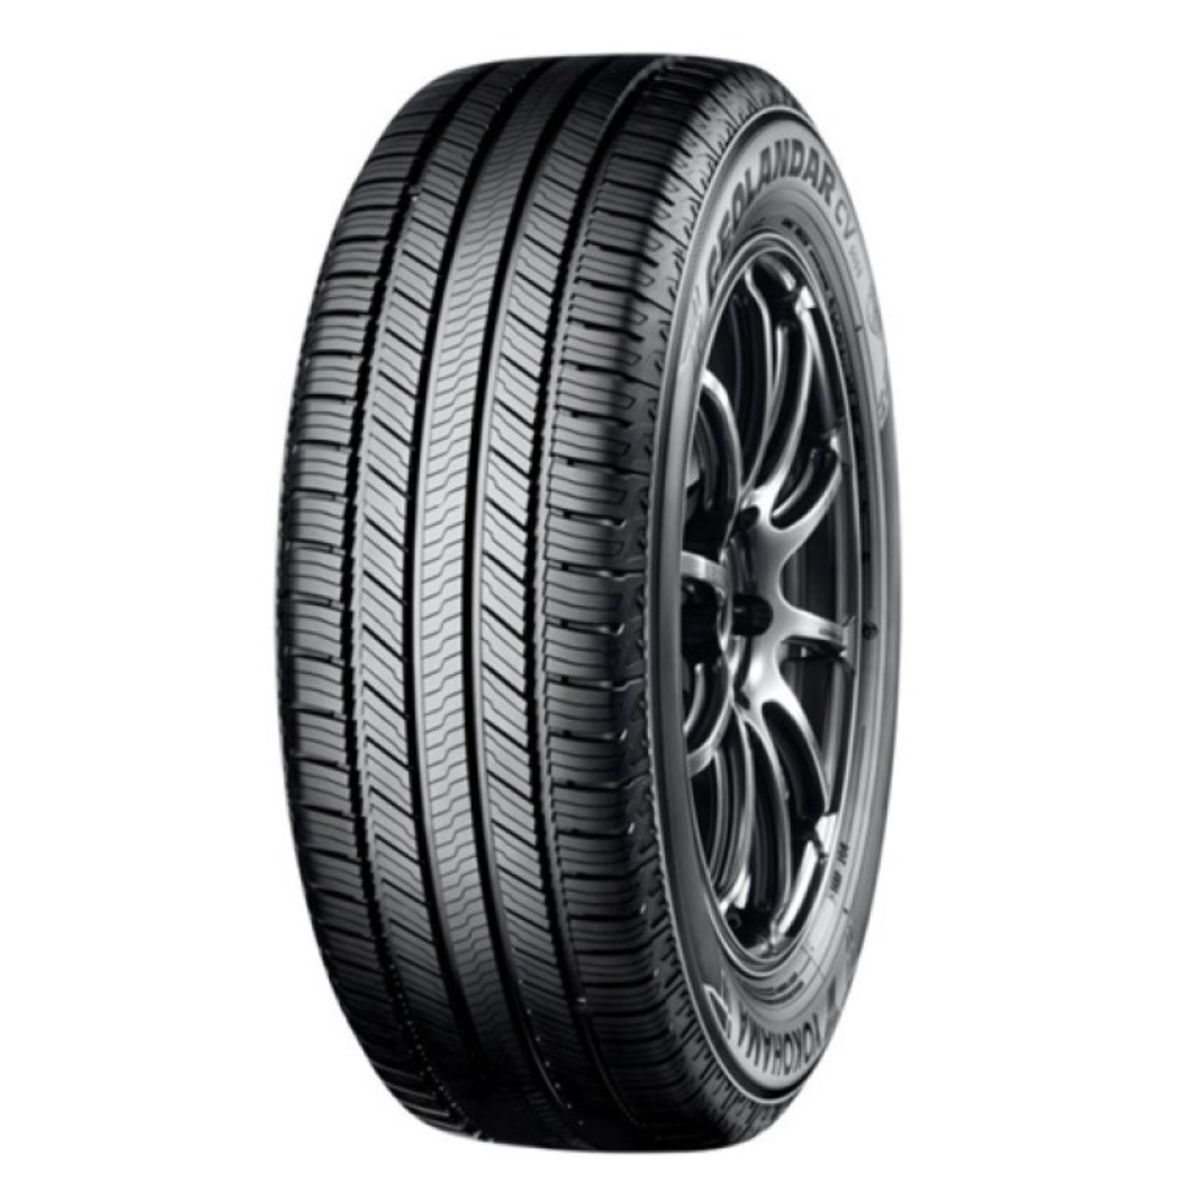 Neumáticos de verano YOKOHAMA Geolandar CV G058 235/65R18 106V